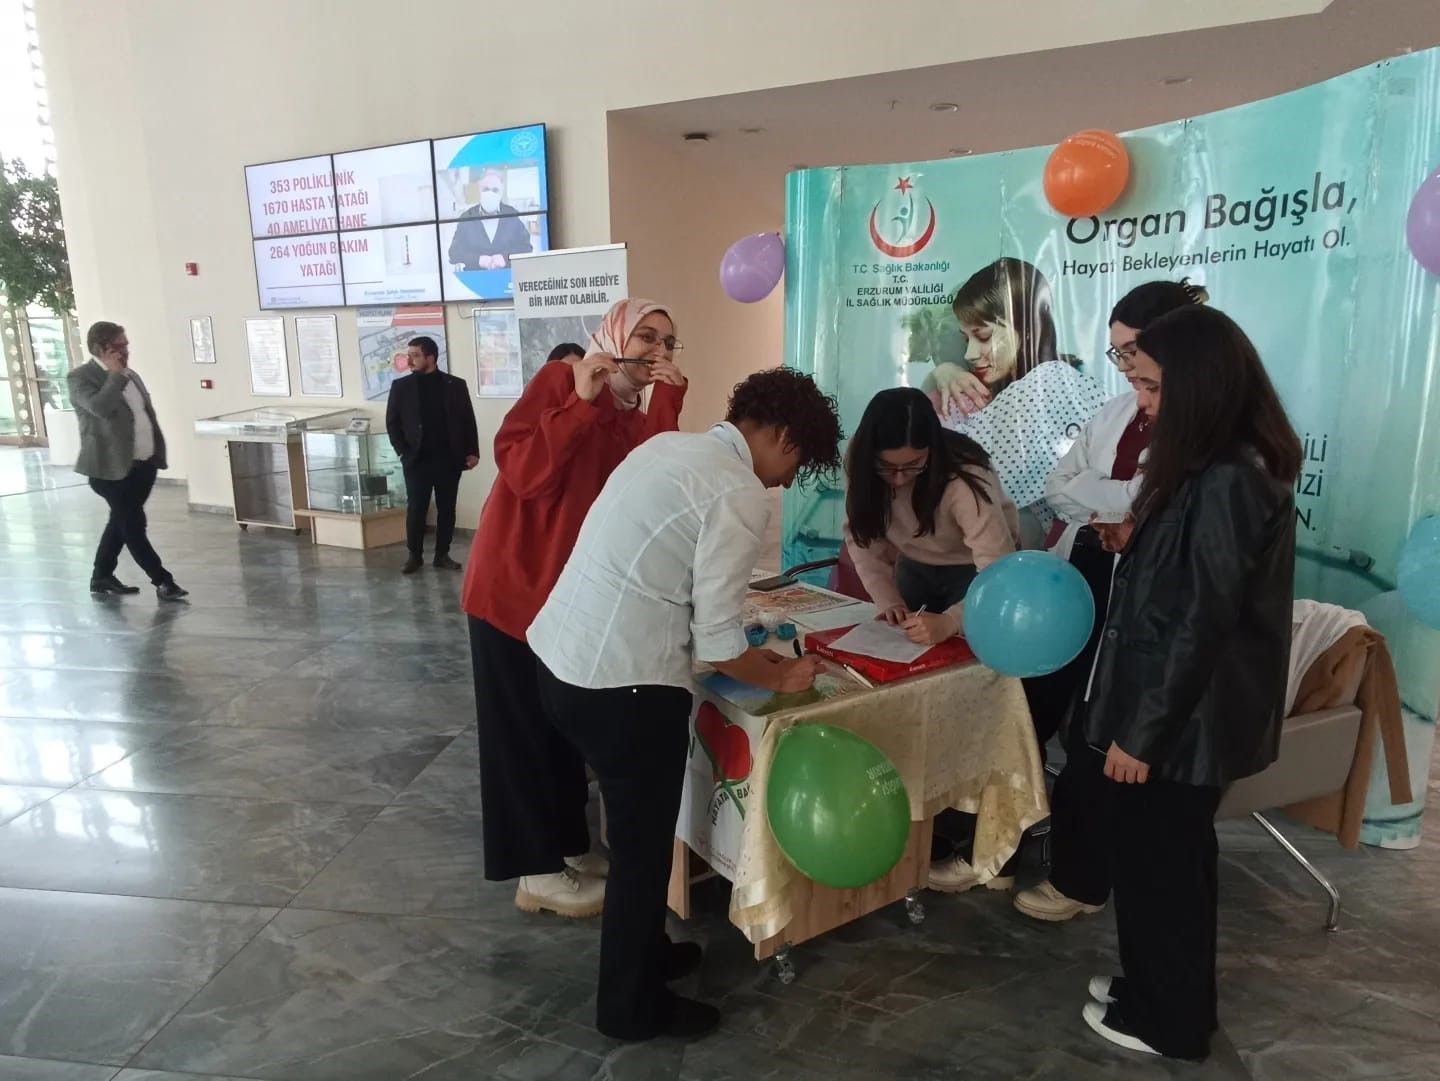 Erzurum Şehir Hastanesi’nde organ bağışı farkındalığı
